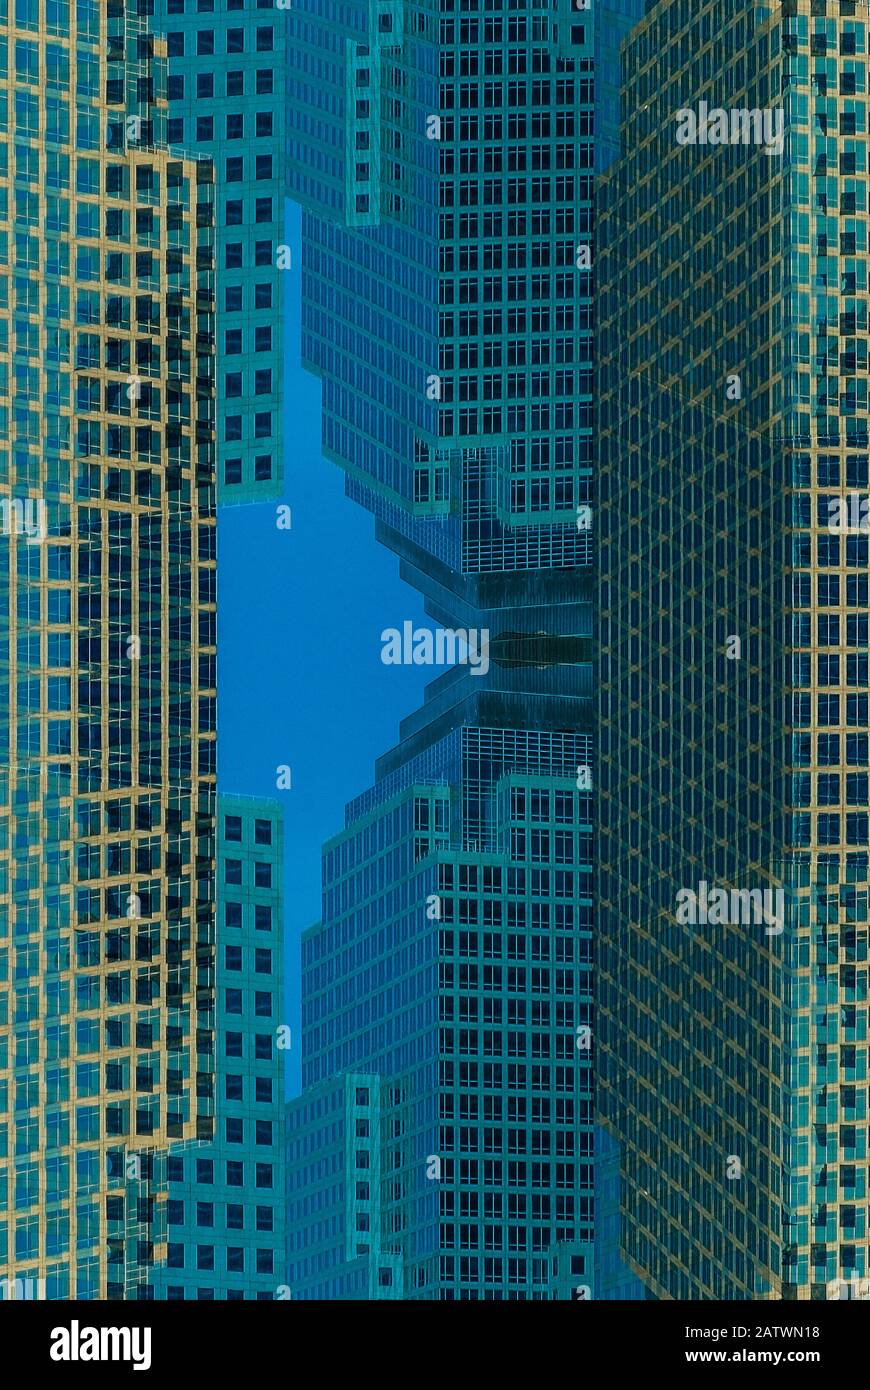 Composito digitale astratto di edificio commerciale nel quartiere finanziario di Manhattan a New York City, USA. Foto Stock